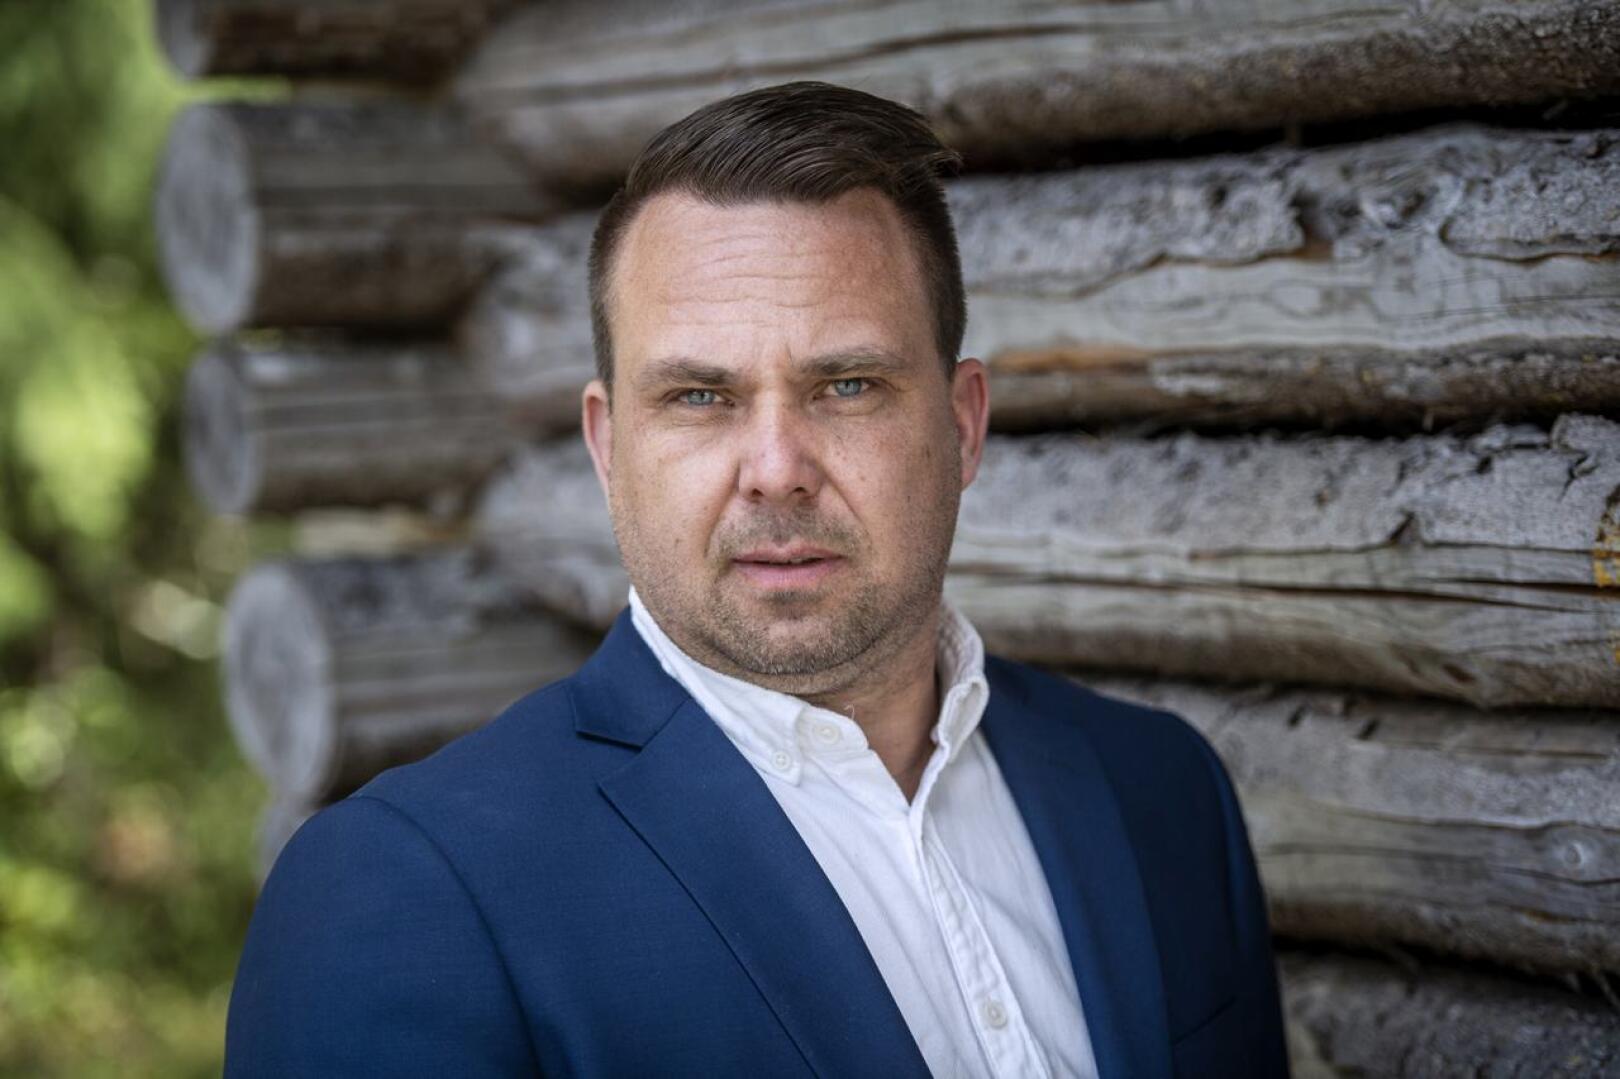 Jarno Vähäkainu on Valta kuuluu kansalle -puolueen pääsihteeri. Hän on myös puolueen toinen varapuheenjohtaja.